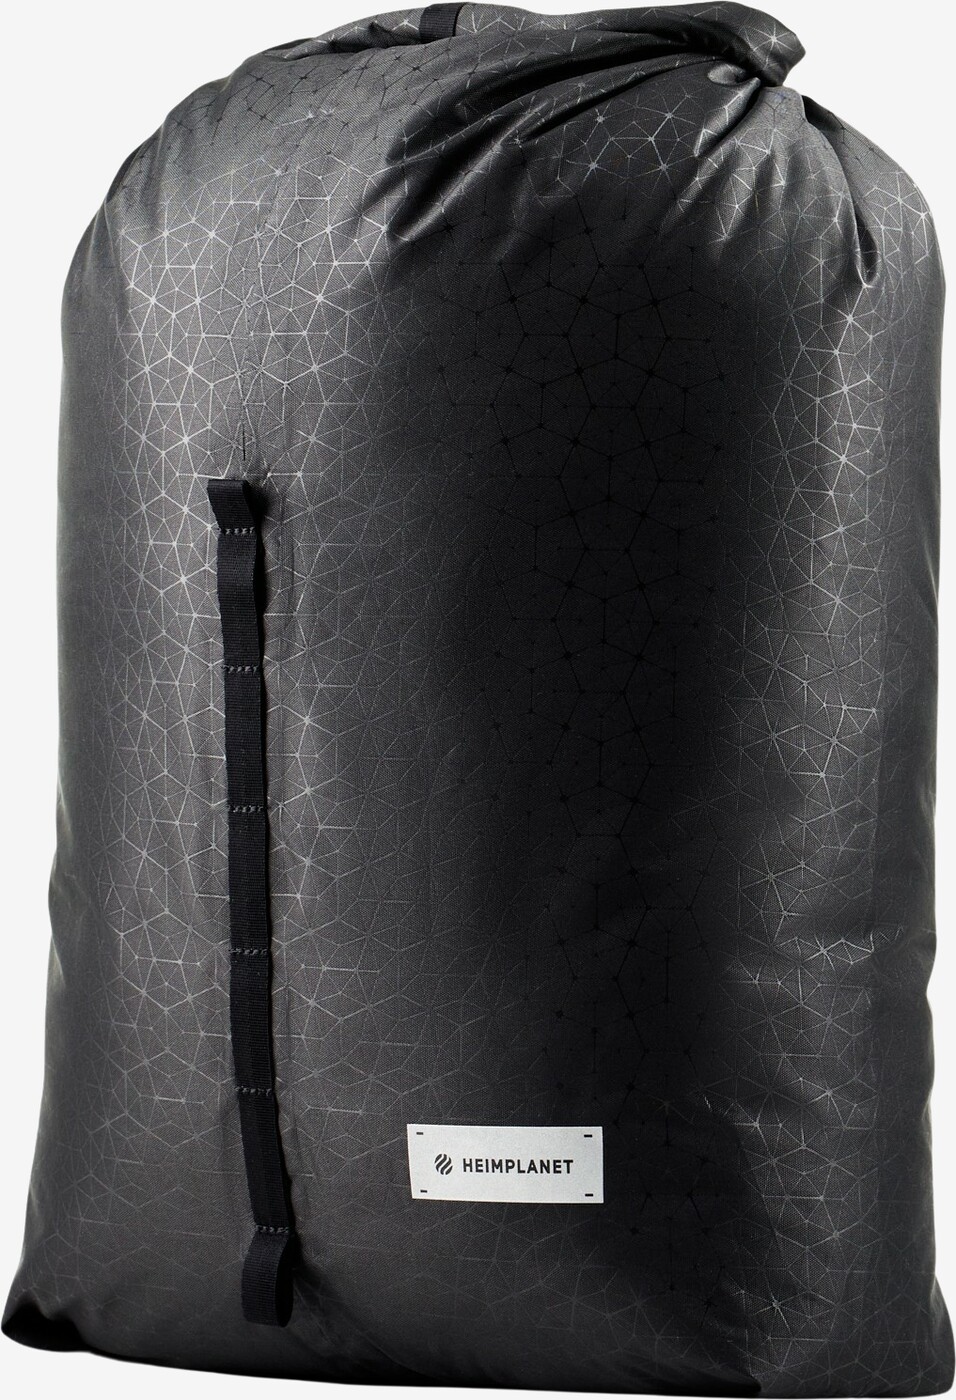 Se Heimplanet - Carry Essentials Kit Bag V2 (Sort) hos Friluft.dk